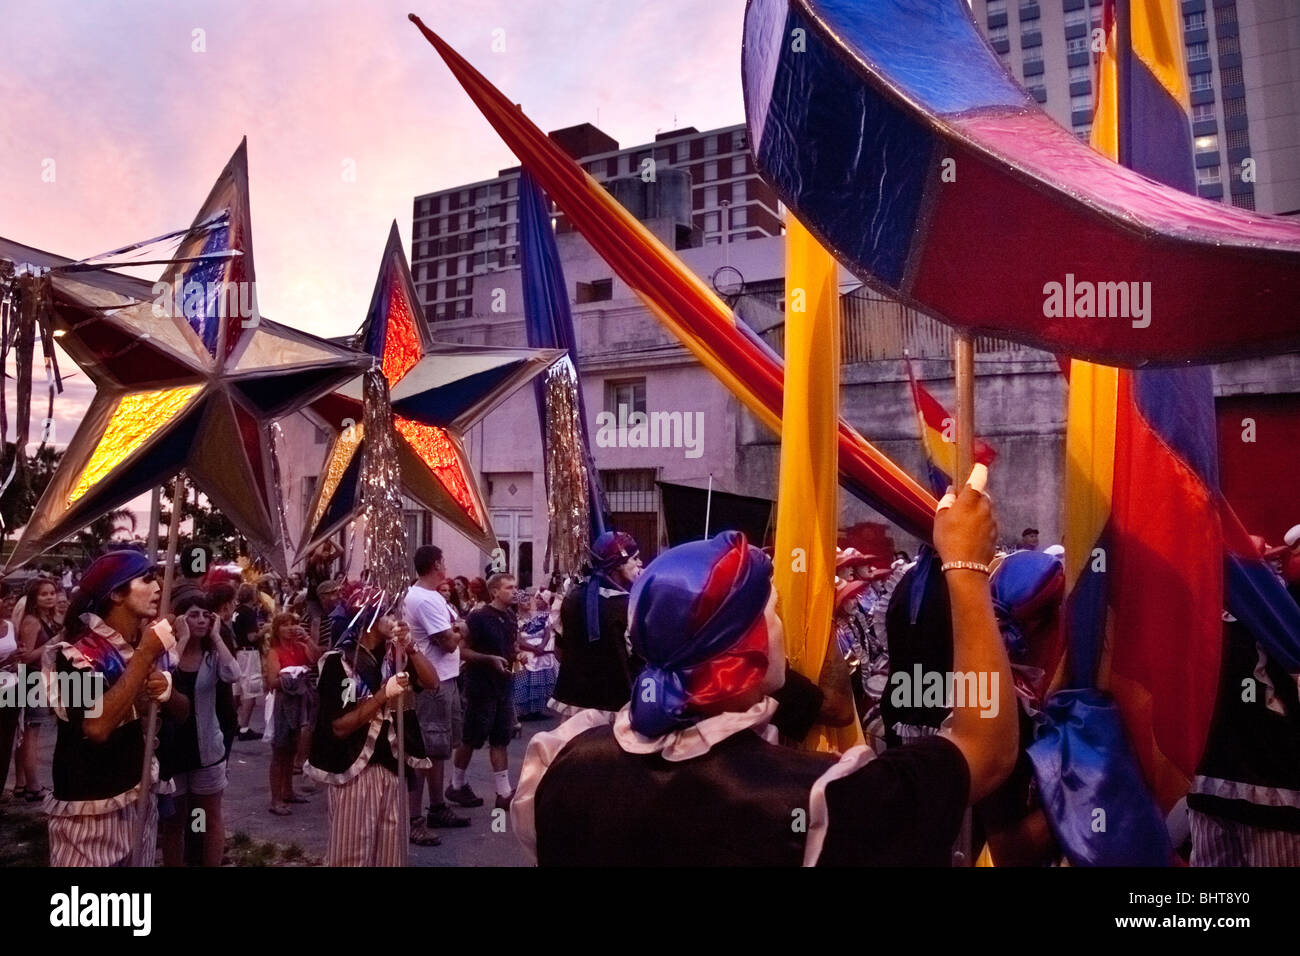 Les artistes interprètes ou exécutants se préparent à entrer dans le défilé des Llamadas durant Carnaval de Montevideo, Uruguay. Banque D'Images